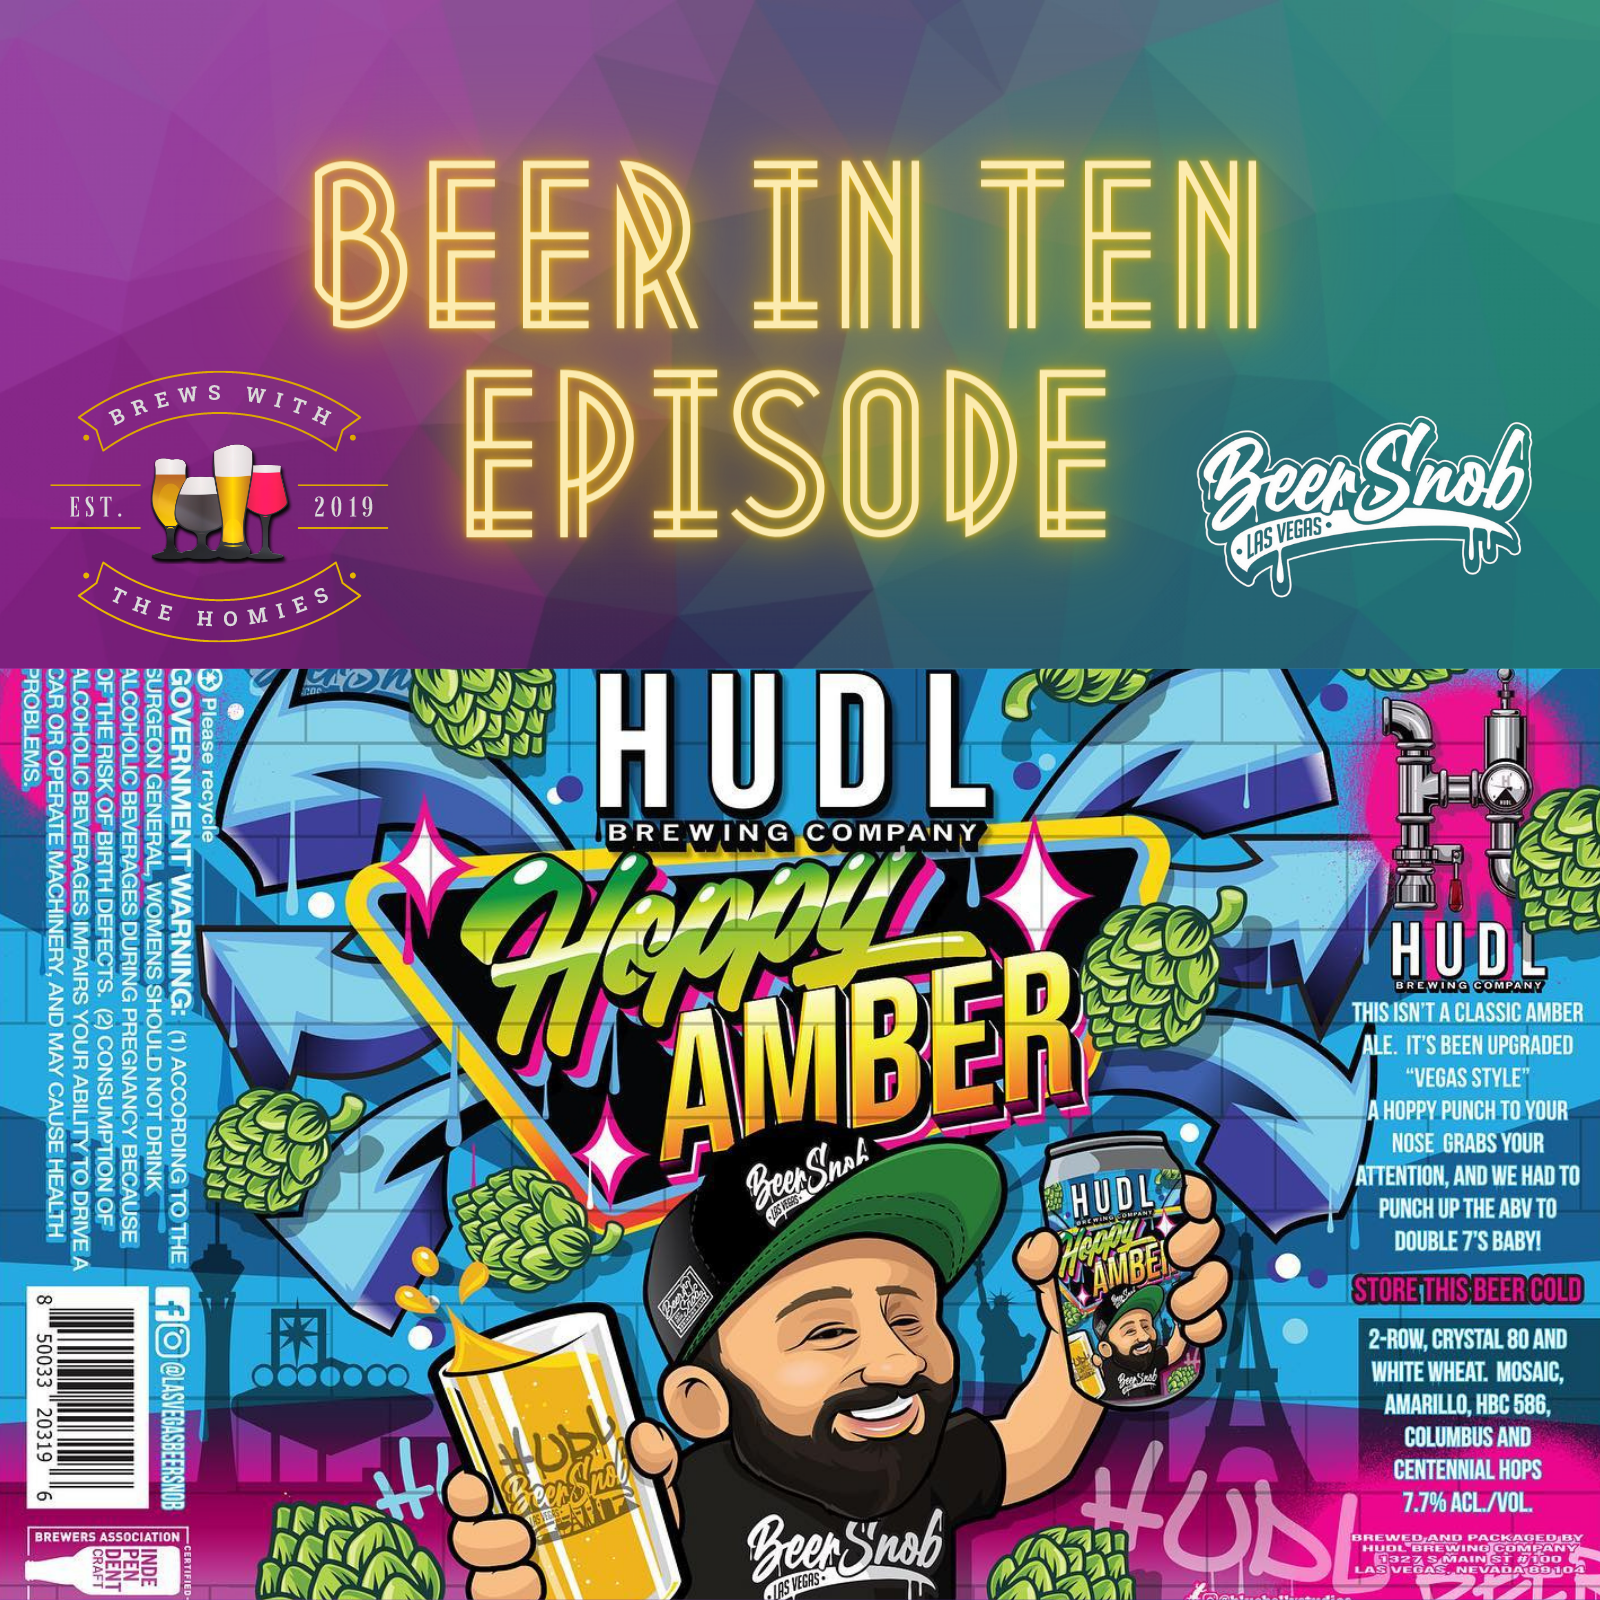 Beer in ten episode: &#34;Hoppy Amber&#34; from Las Vegas Beer Snob & HUDL